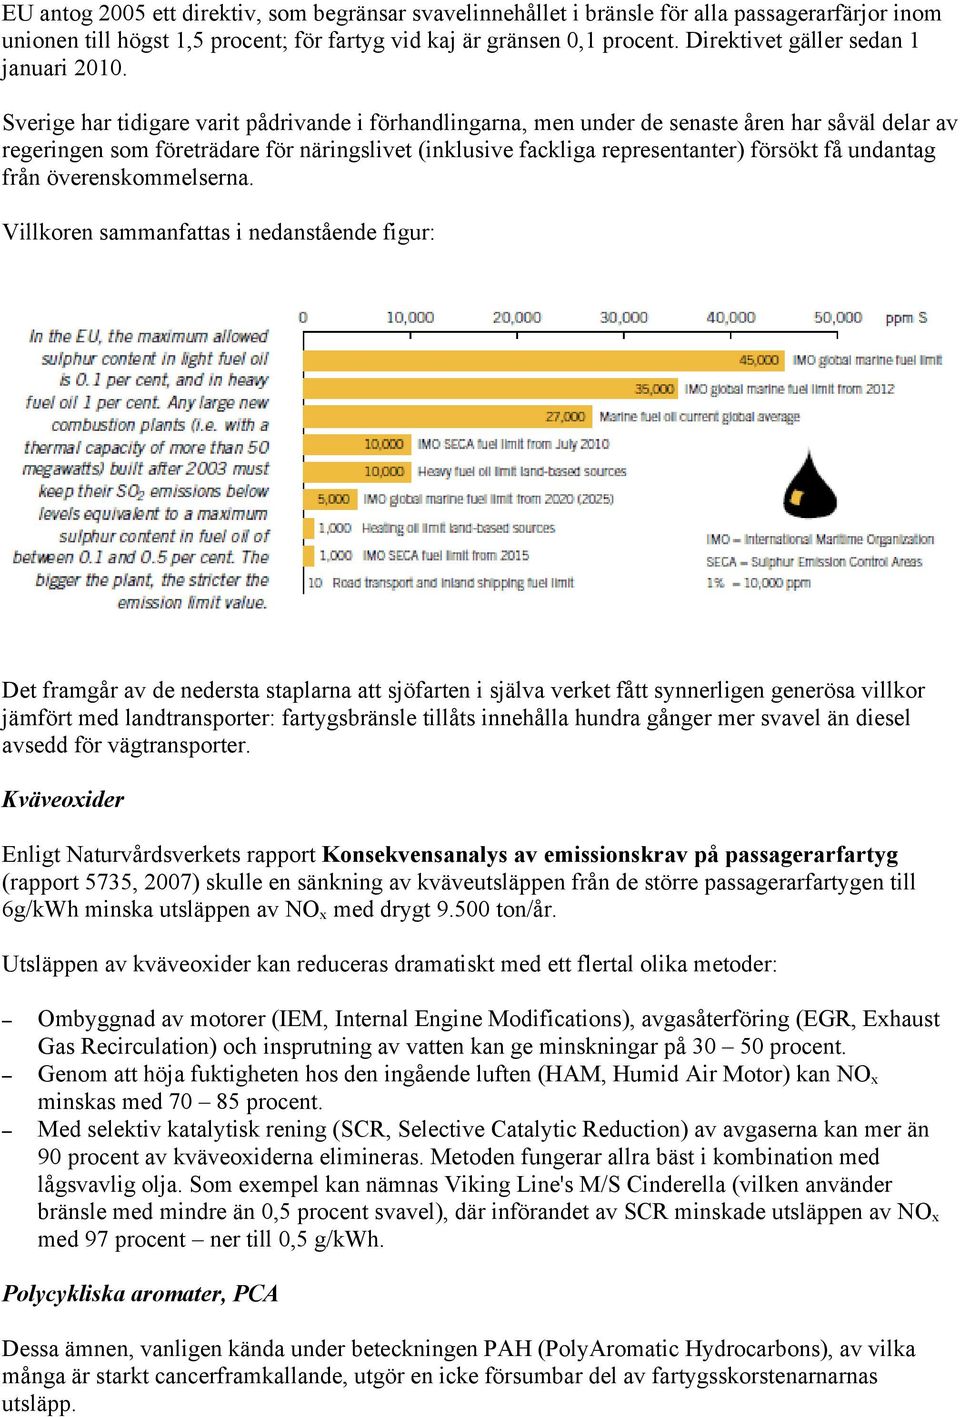 Sverige har tidigare varit pådrivande i förhandlingarna, men under de senaste åren har såväl delar av regeringen som företrädare för näringslivet (inklusive fackliga representanter) försökt få